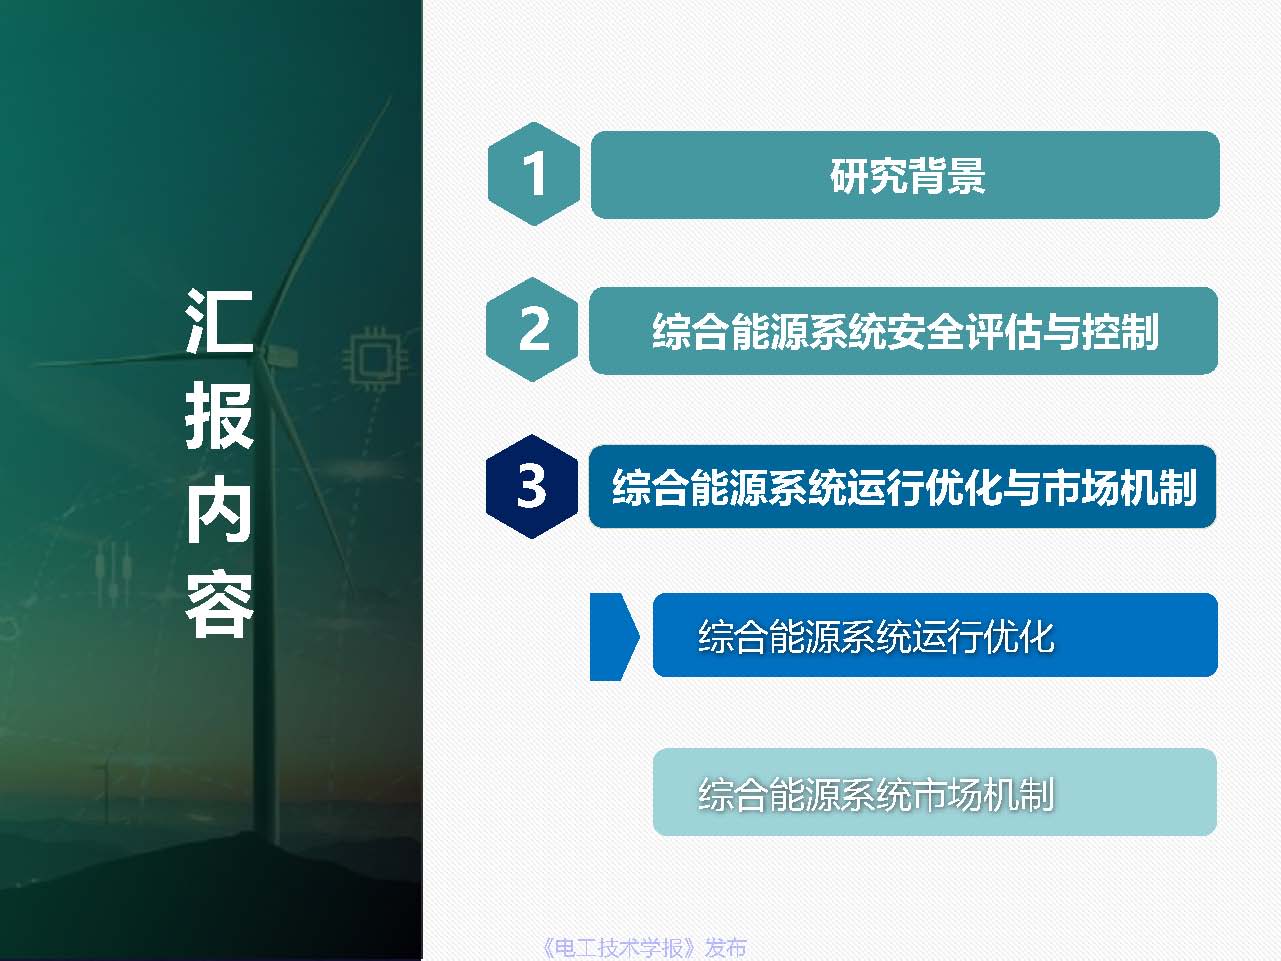 东北电力大学姜涛：促进新能源消纳的综合能源系统安全性与运行